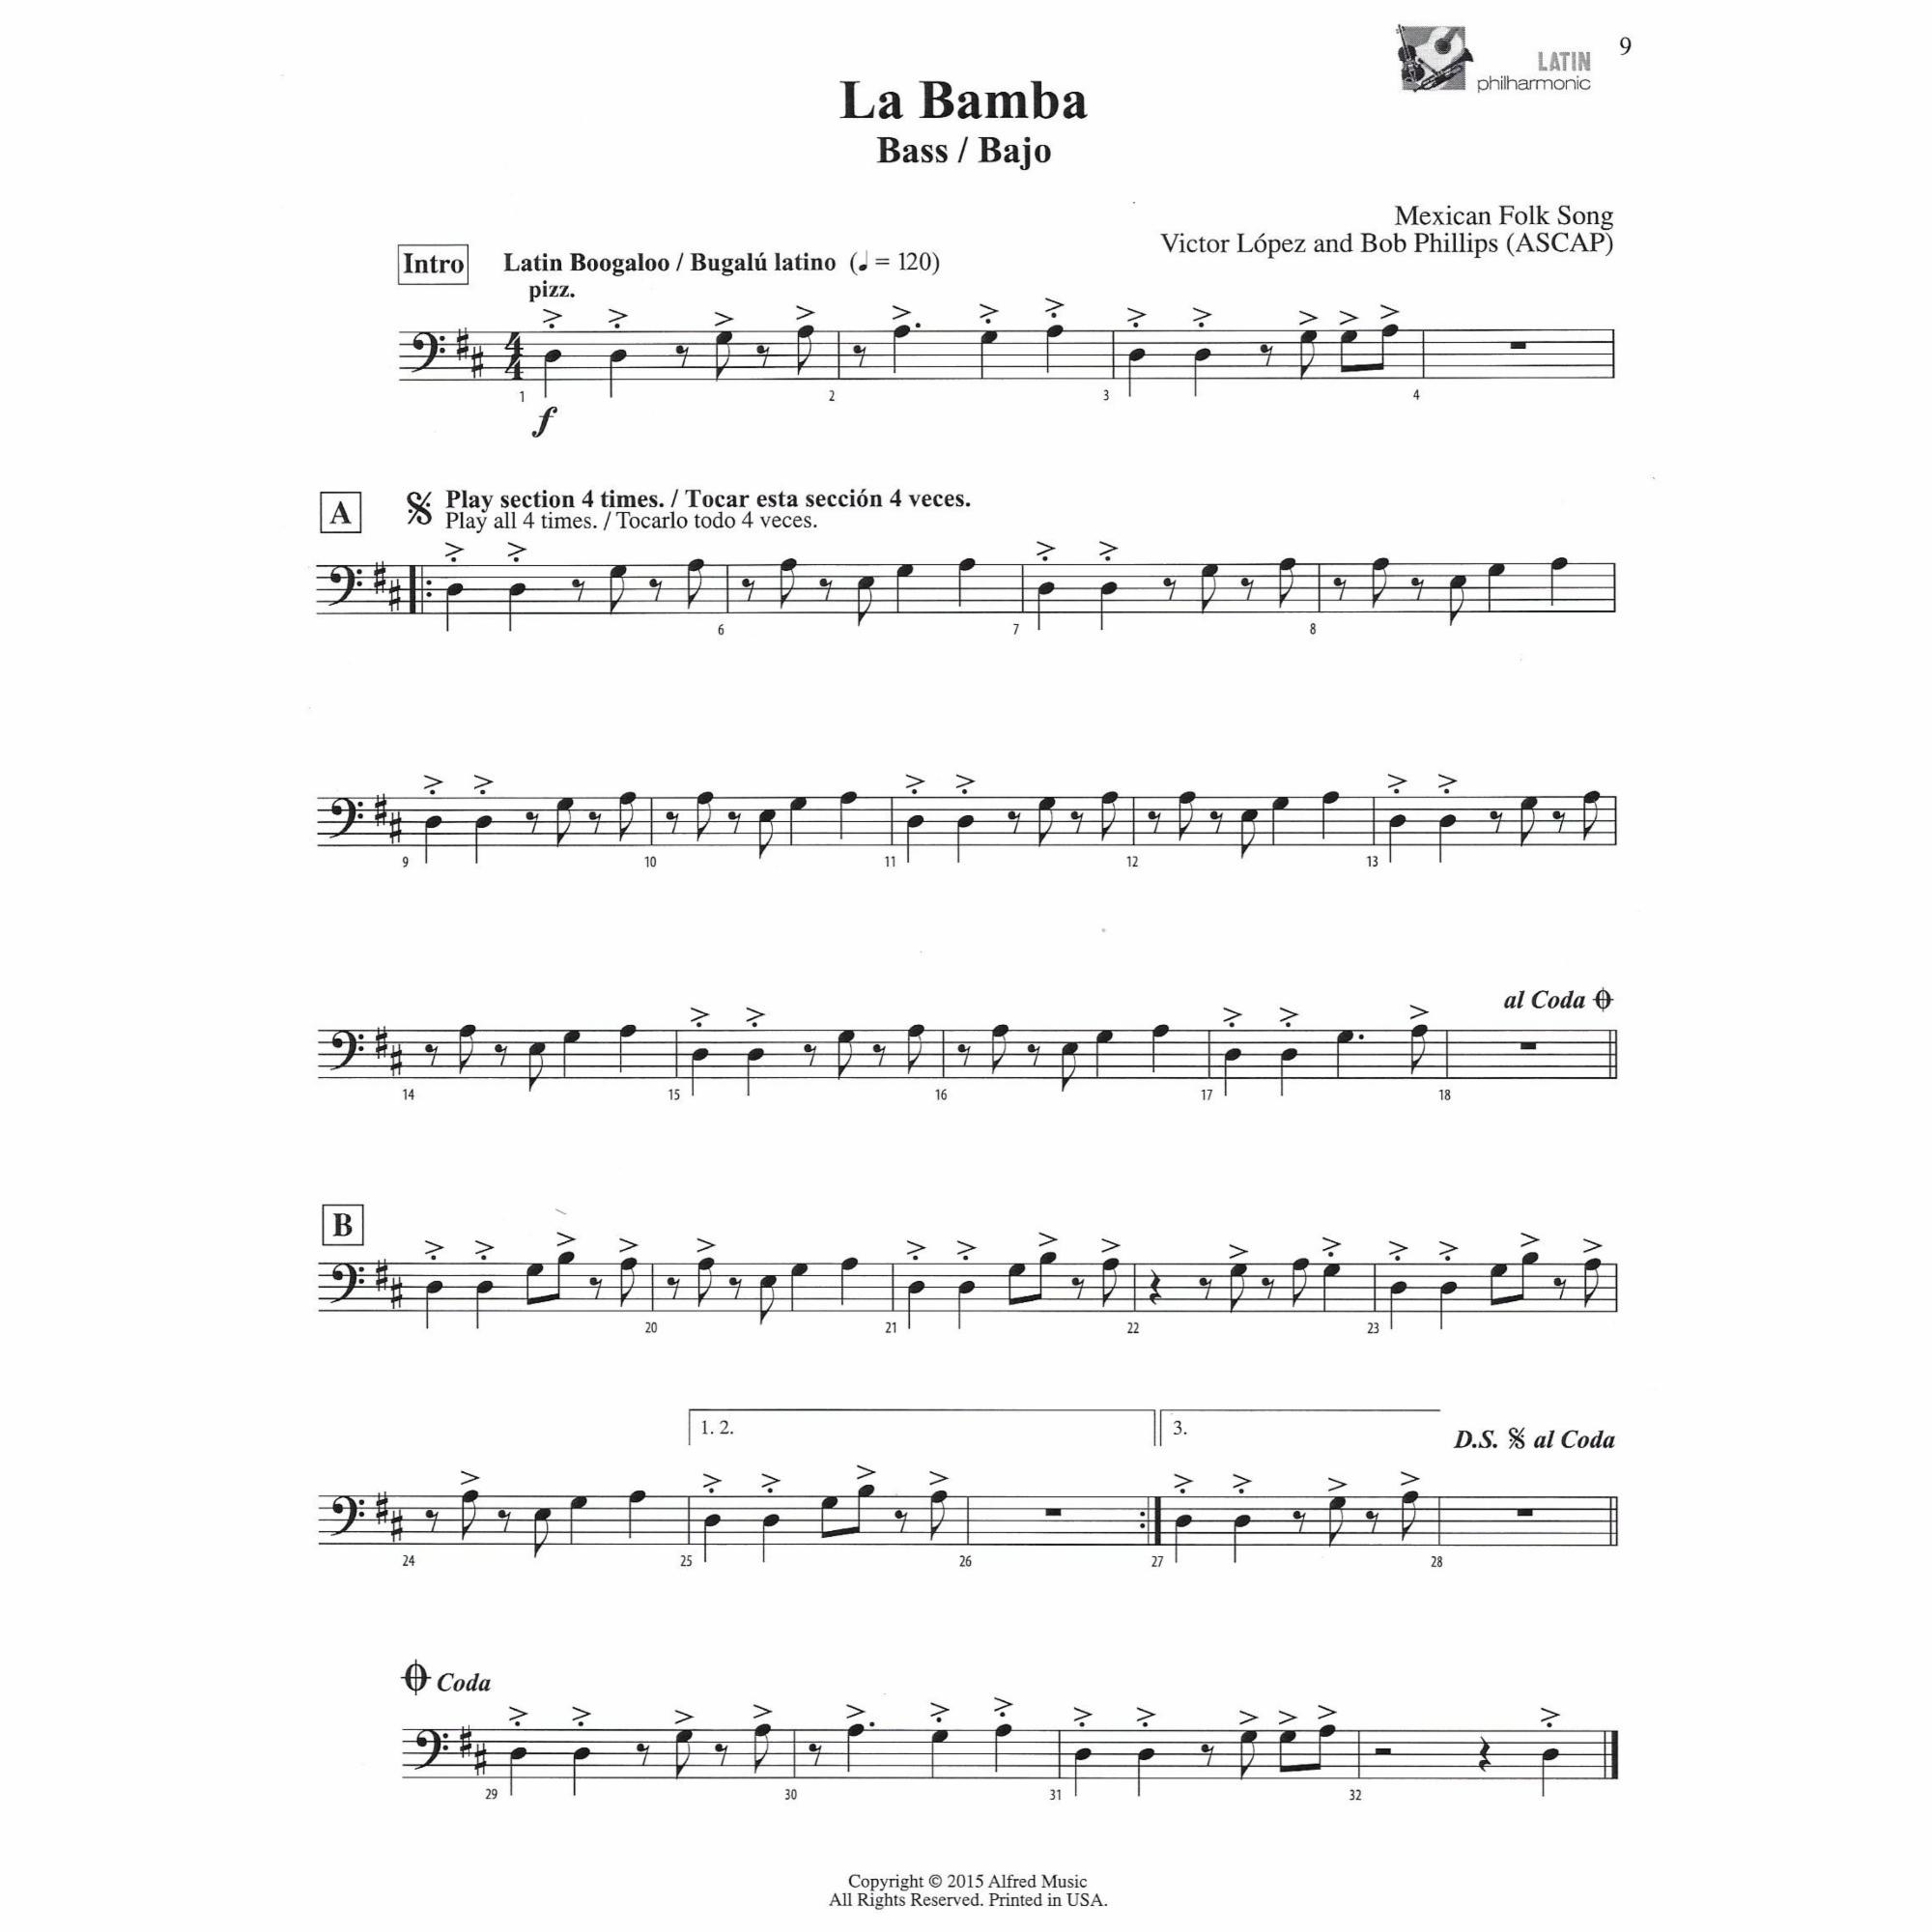 Sample: Cello/Bass (Pg. 9)